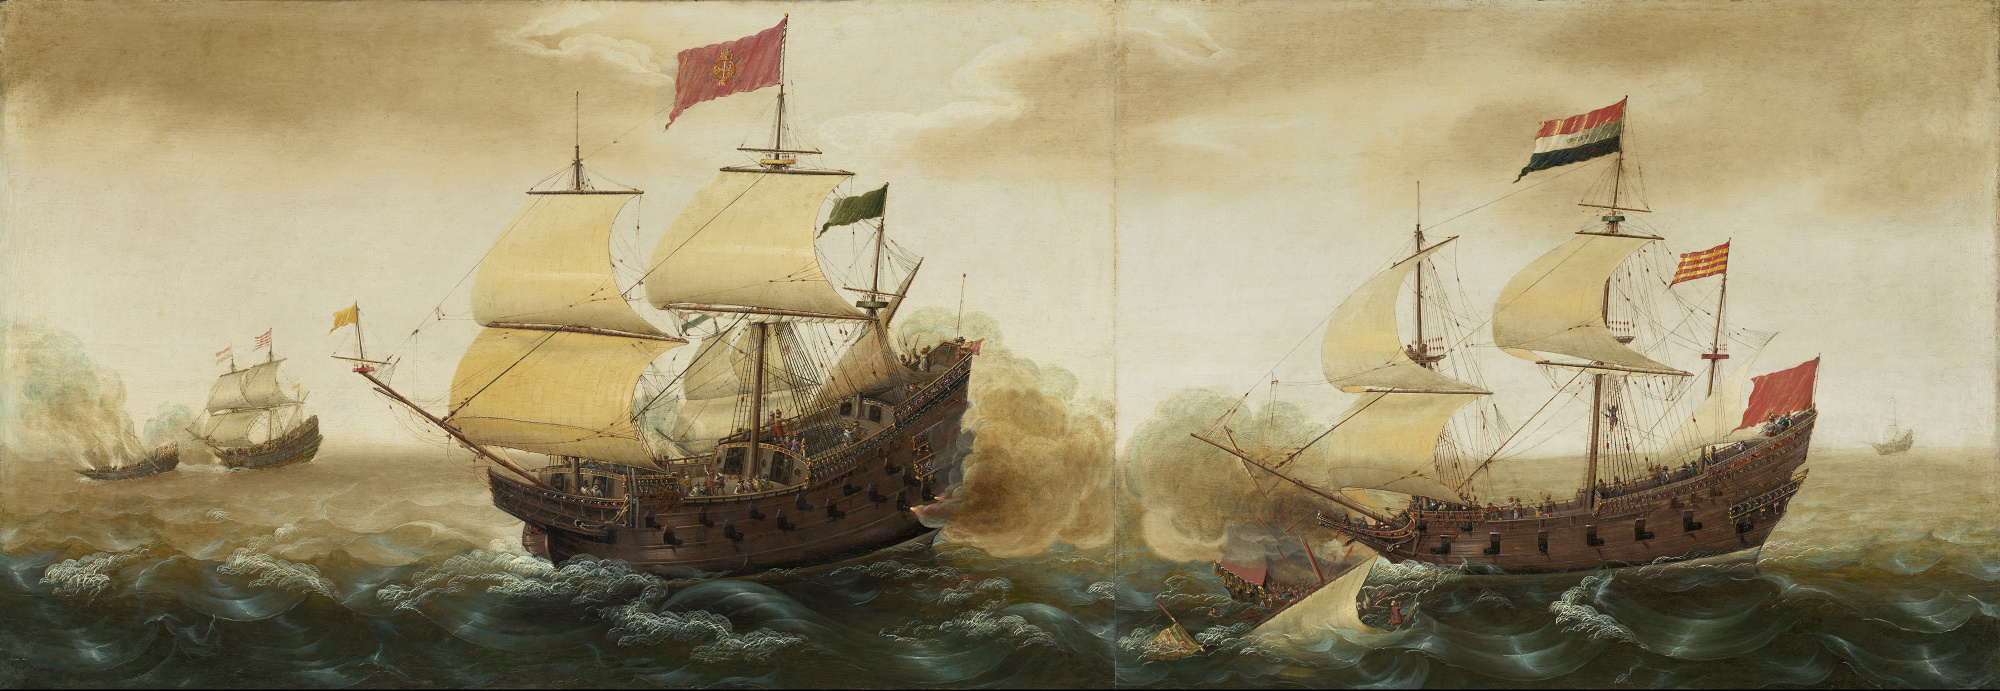 Корнелис Вербеек. Морской бой между голландскими и испанскими военными кораблями